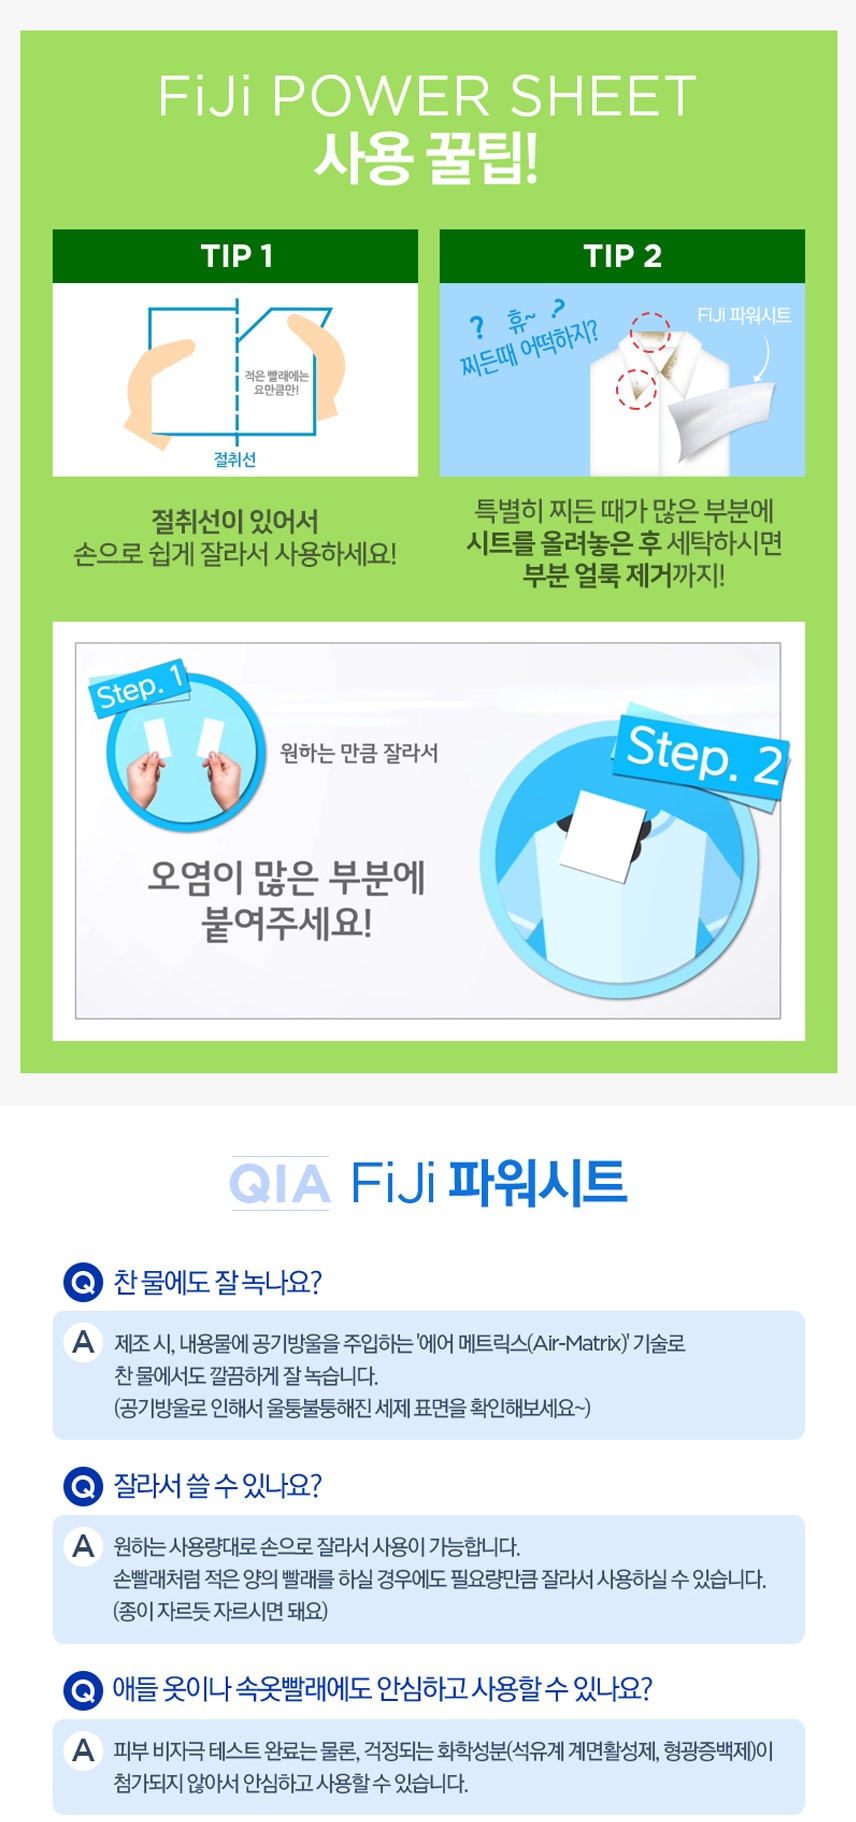 韓國食品-[LGCare] FiJi Power Laundry Sheet - 30P